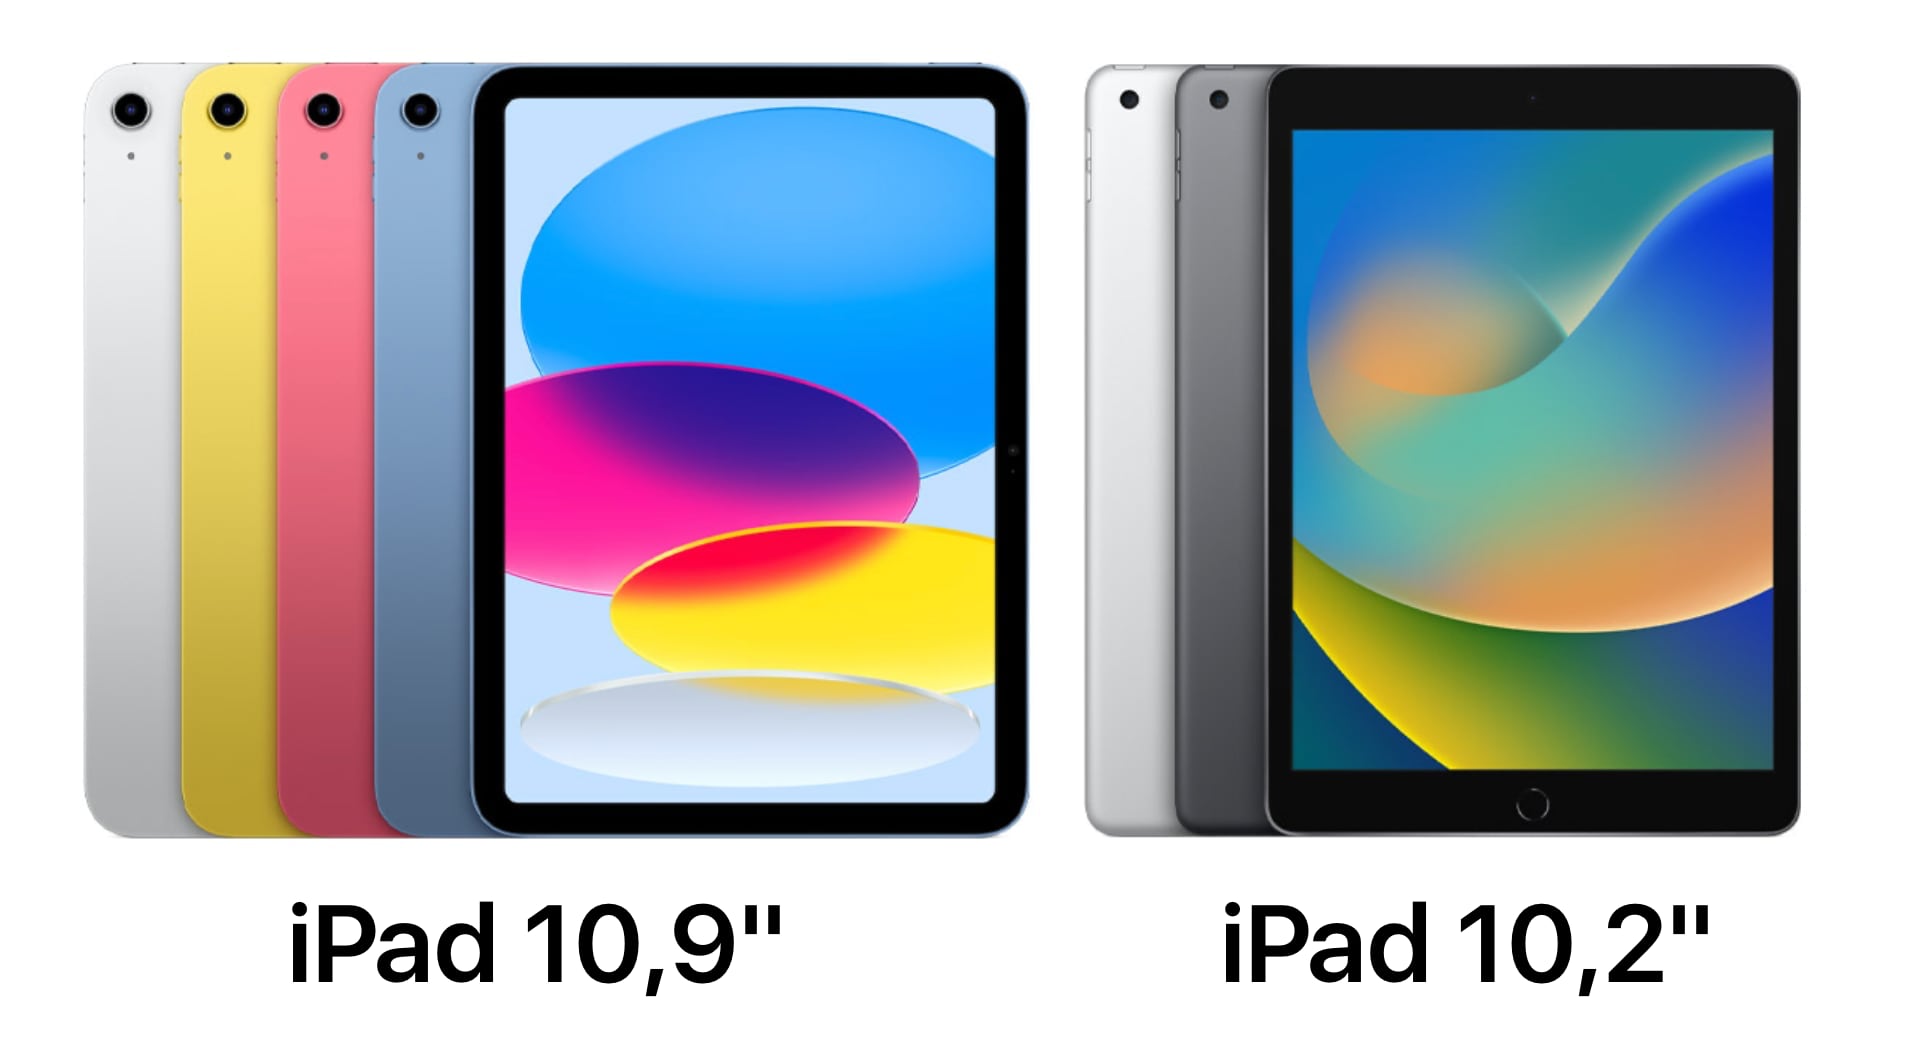 iPad 10,2 vs iPad 10,9